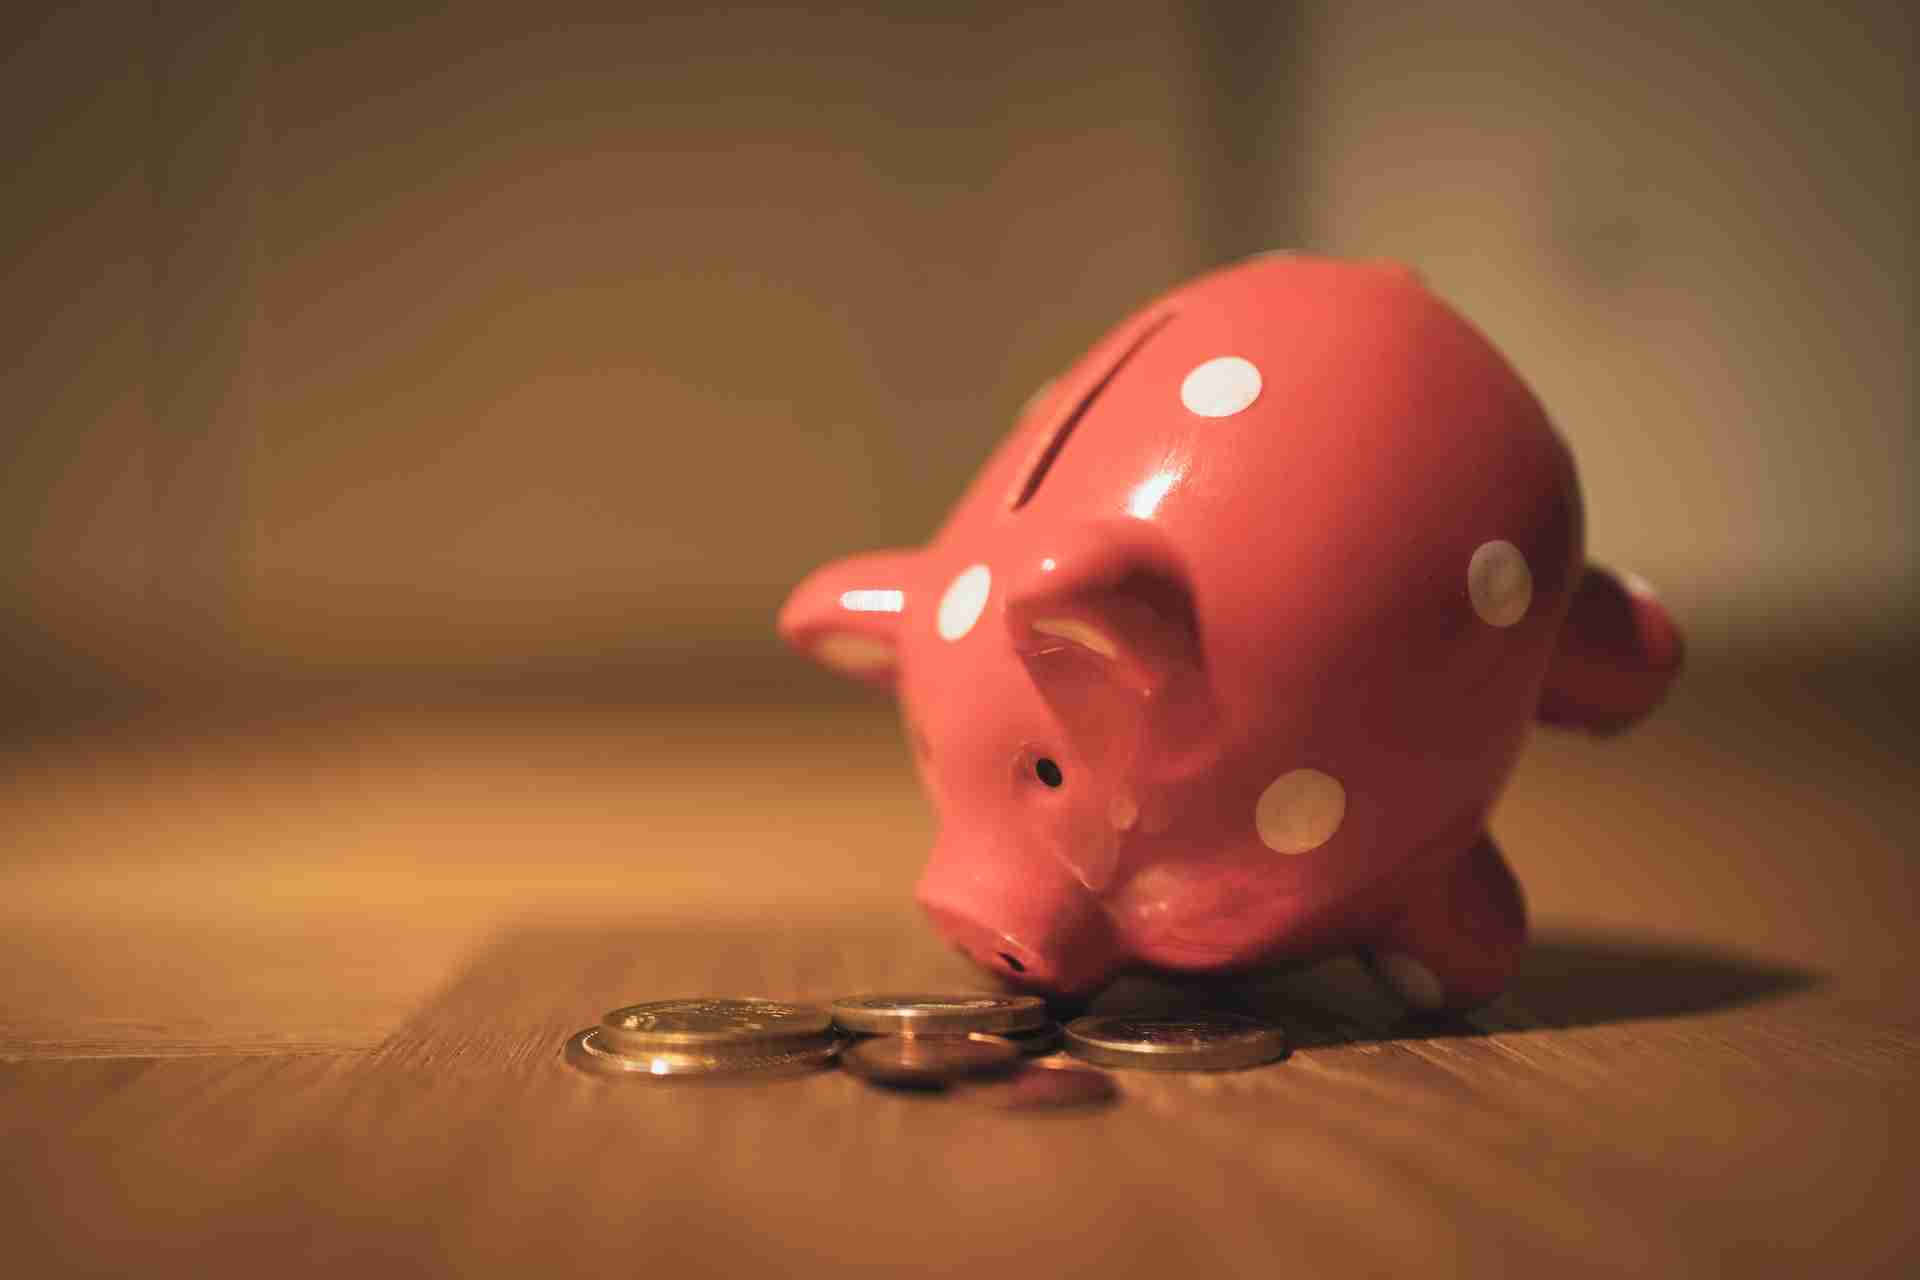 Regular Savings Account in a Piggy Bank